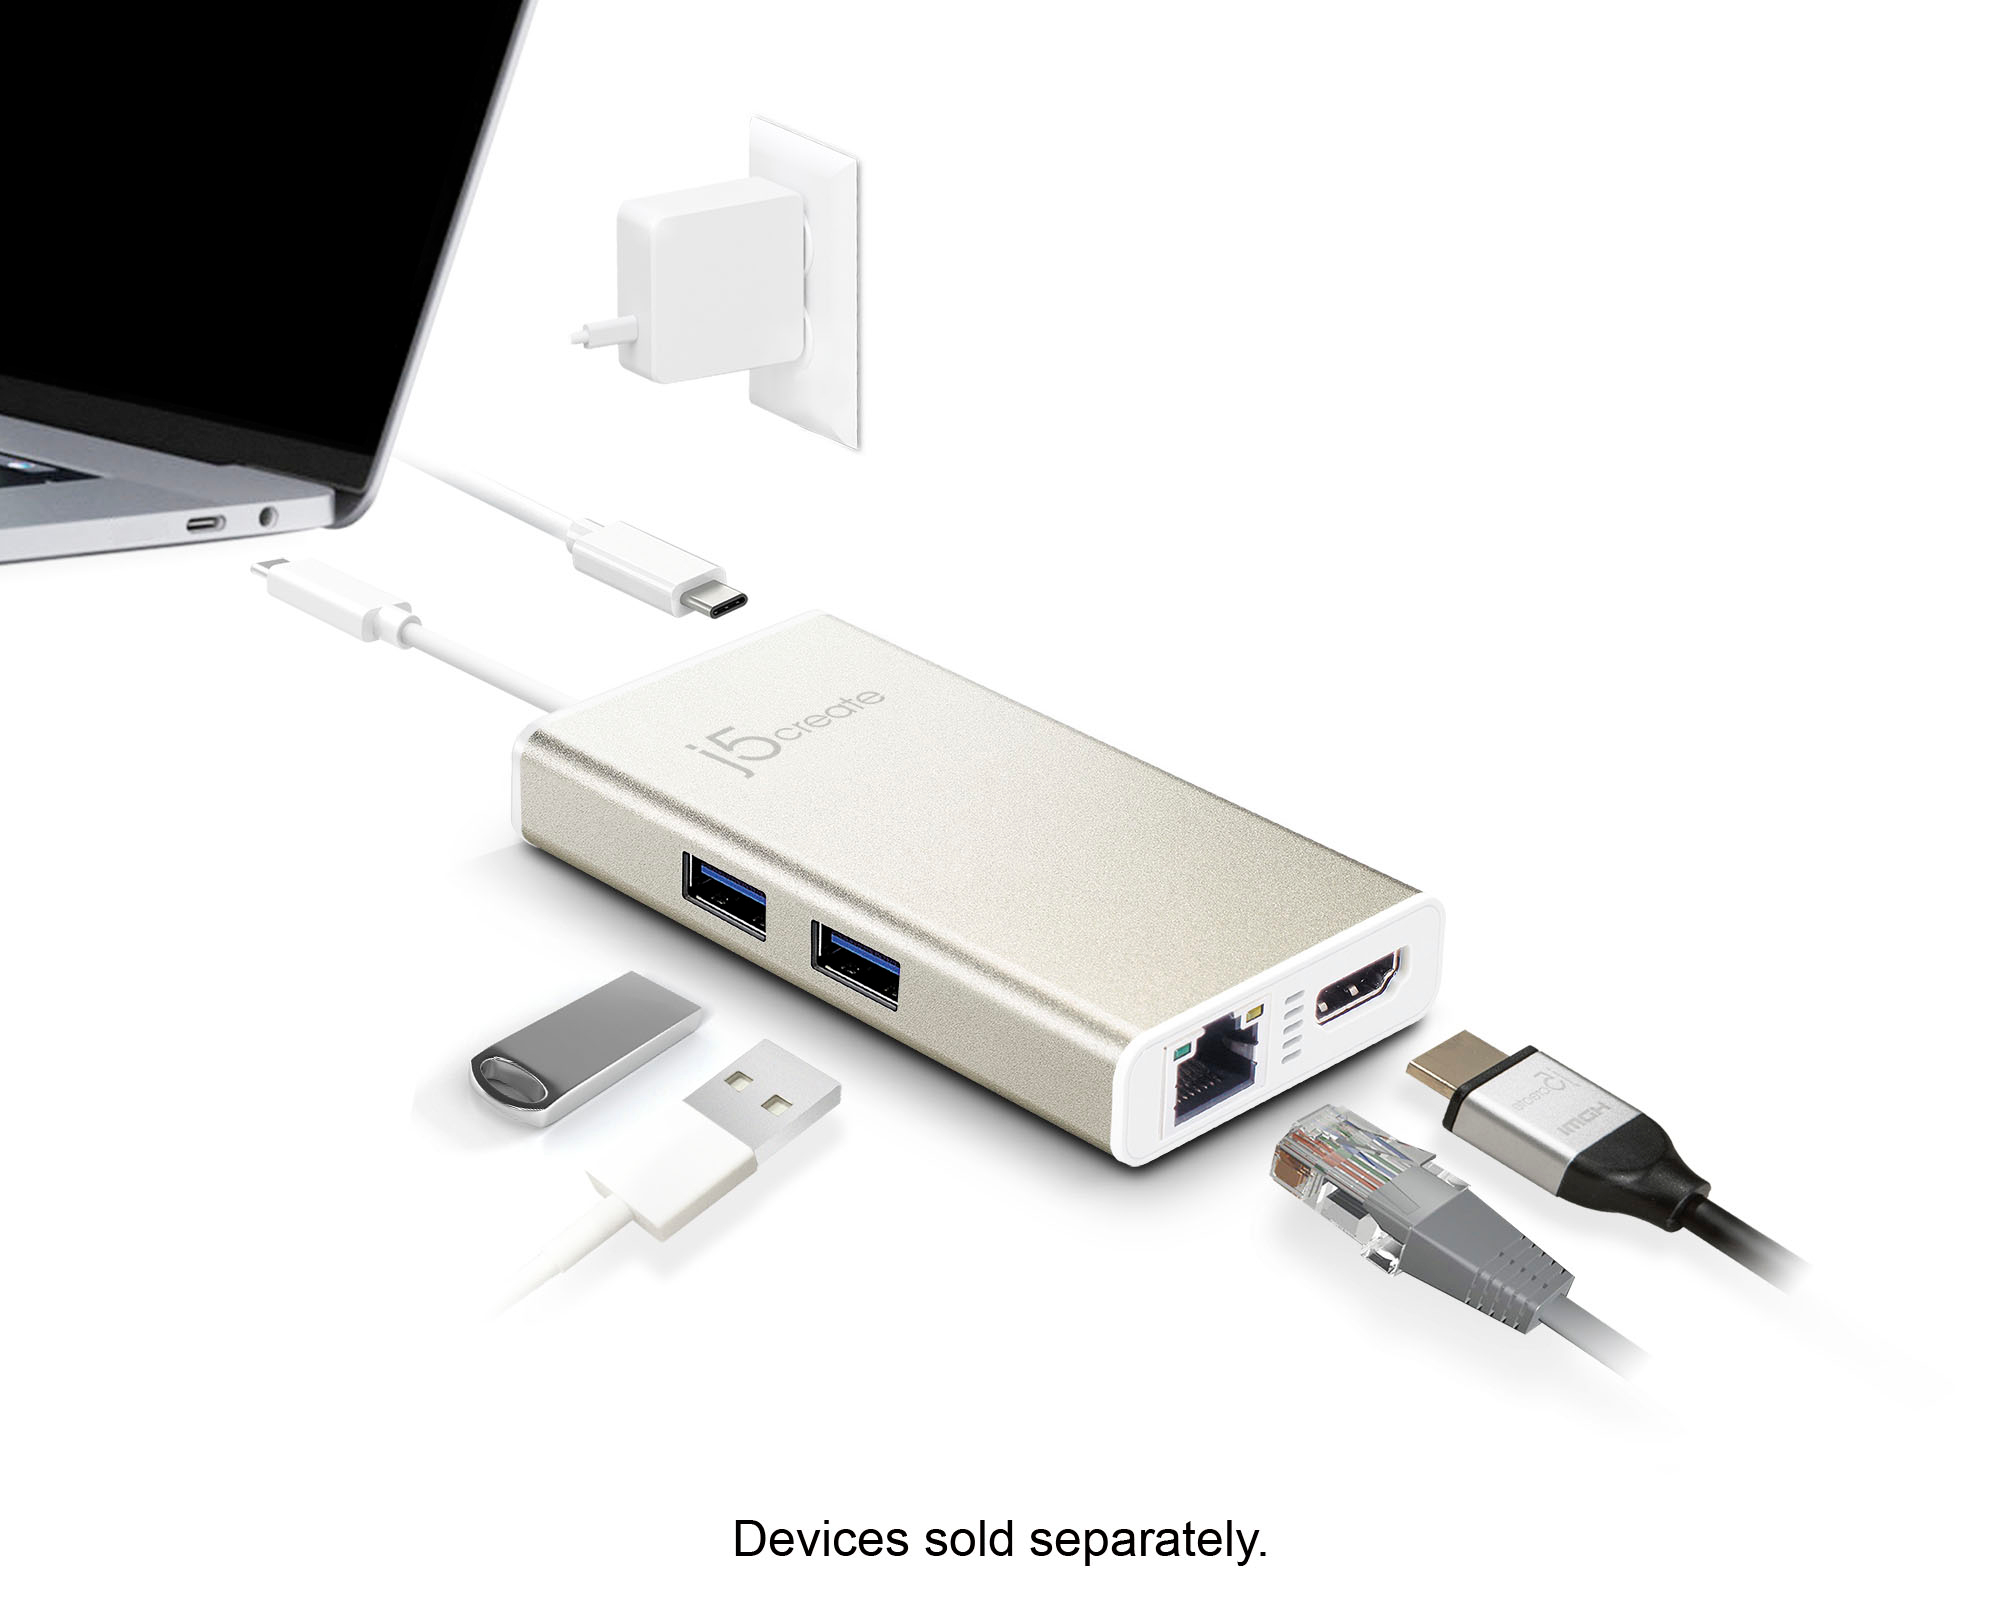 Adaptador USB C a HDMI/USB 3.0/USB C/Ethernet RJ45 USB-5290 Steren USB-5290